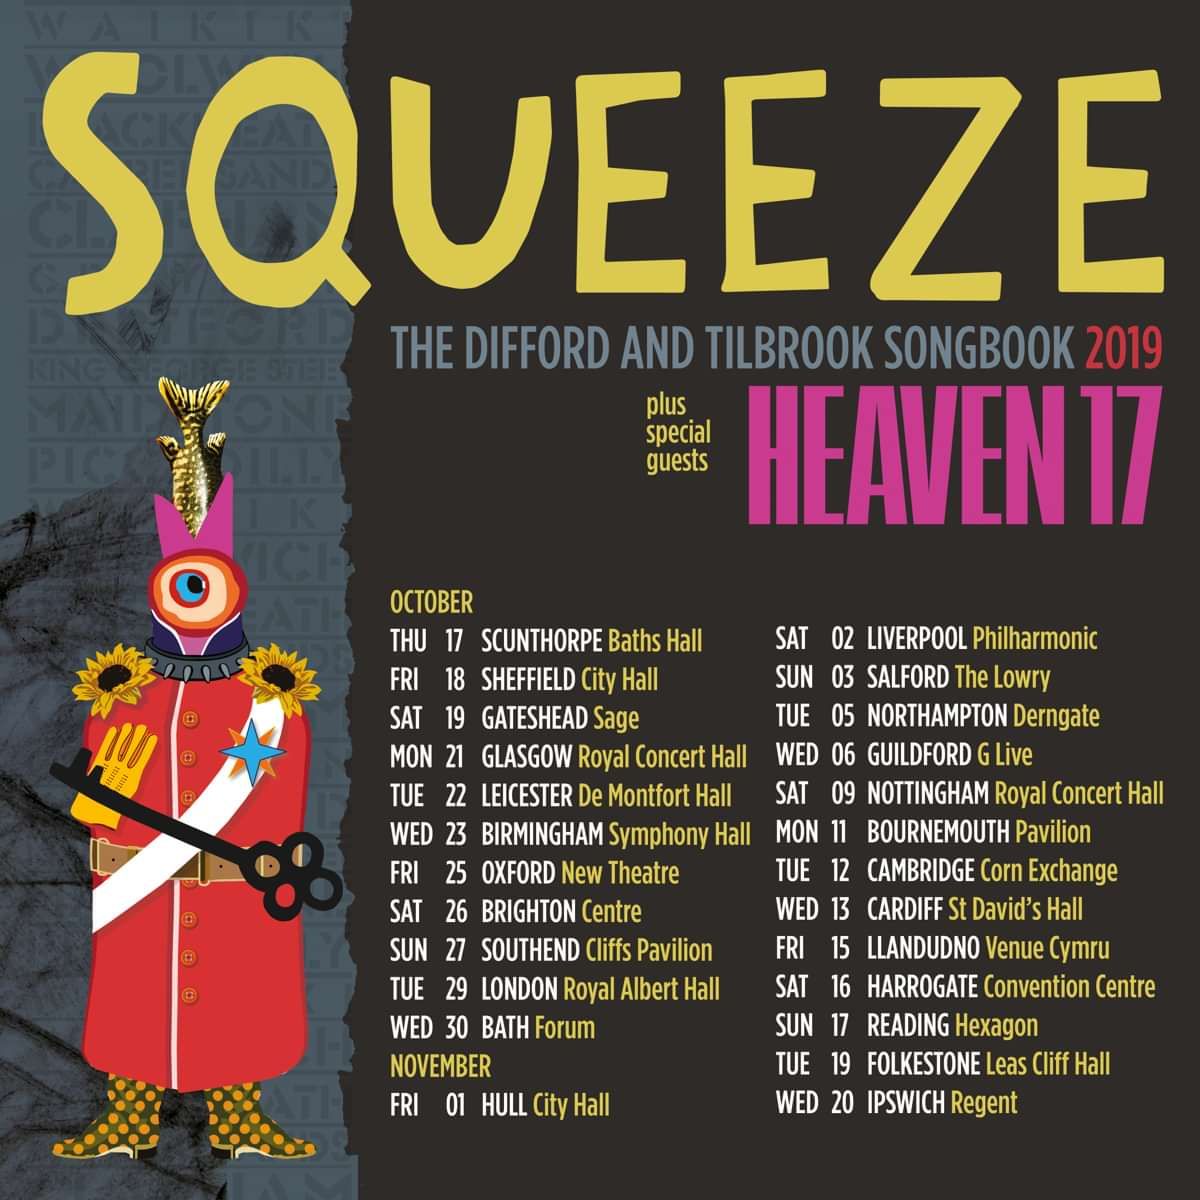 squeeze tour statistics